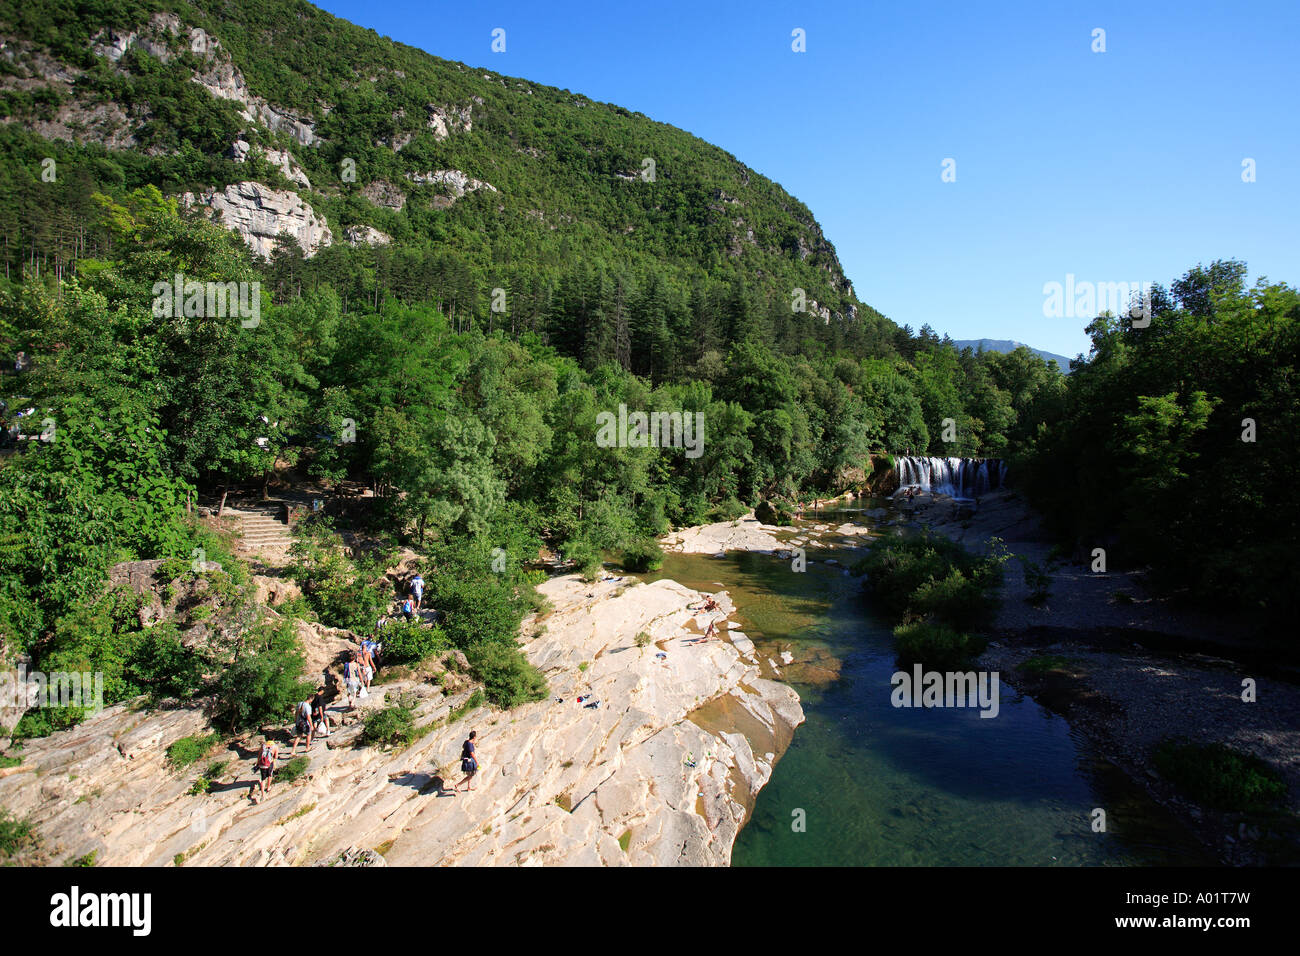 Cascade de la vis st hi-res stock photography and images - Alamy